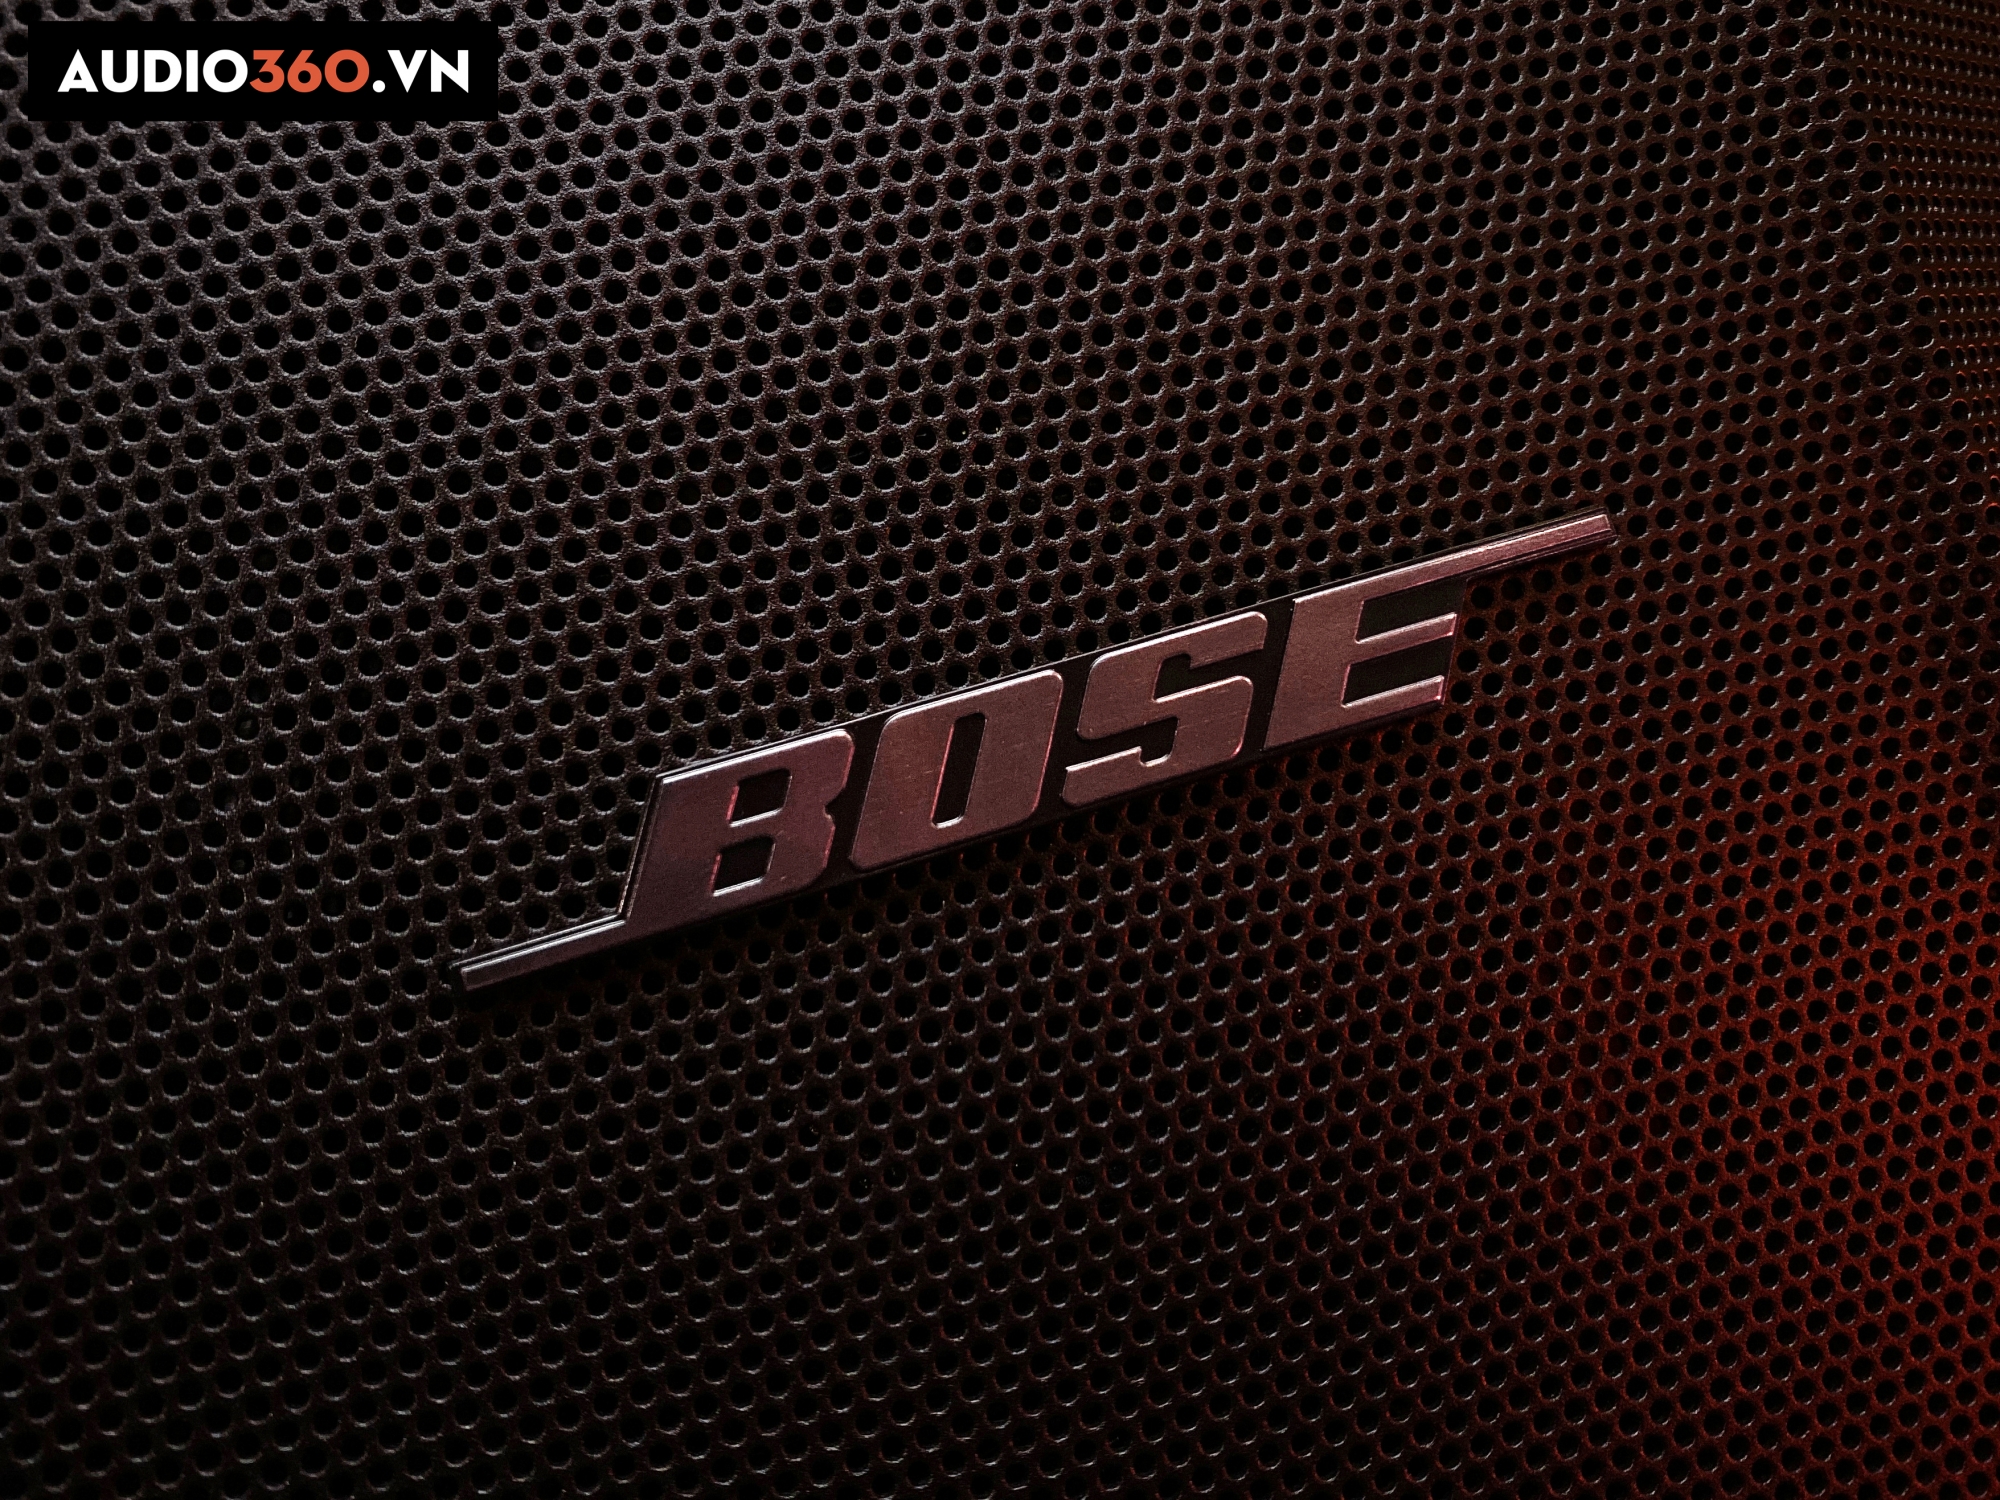 Bose - Hãng thiết bị âm thanh chinh phục cộng đồng Audiophiles thế giới